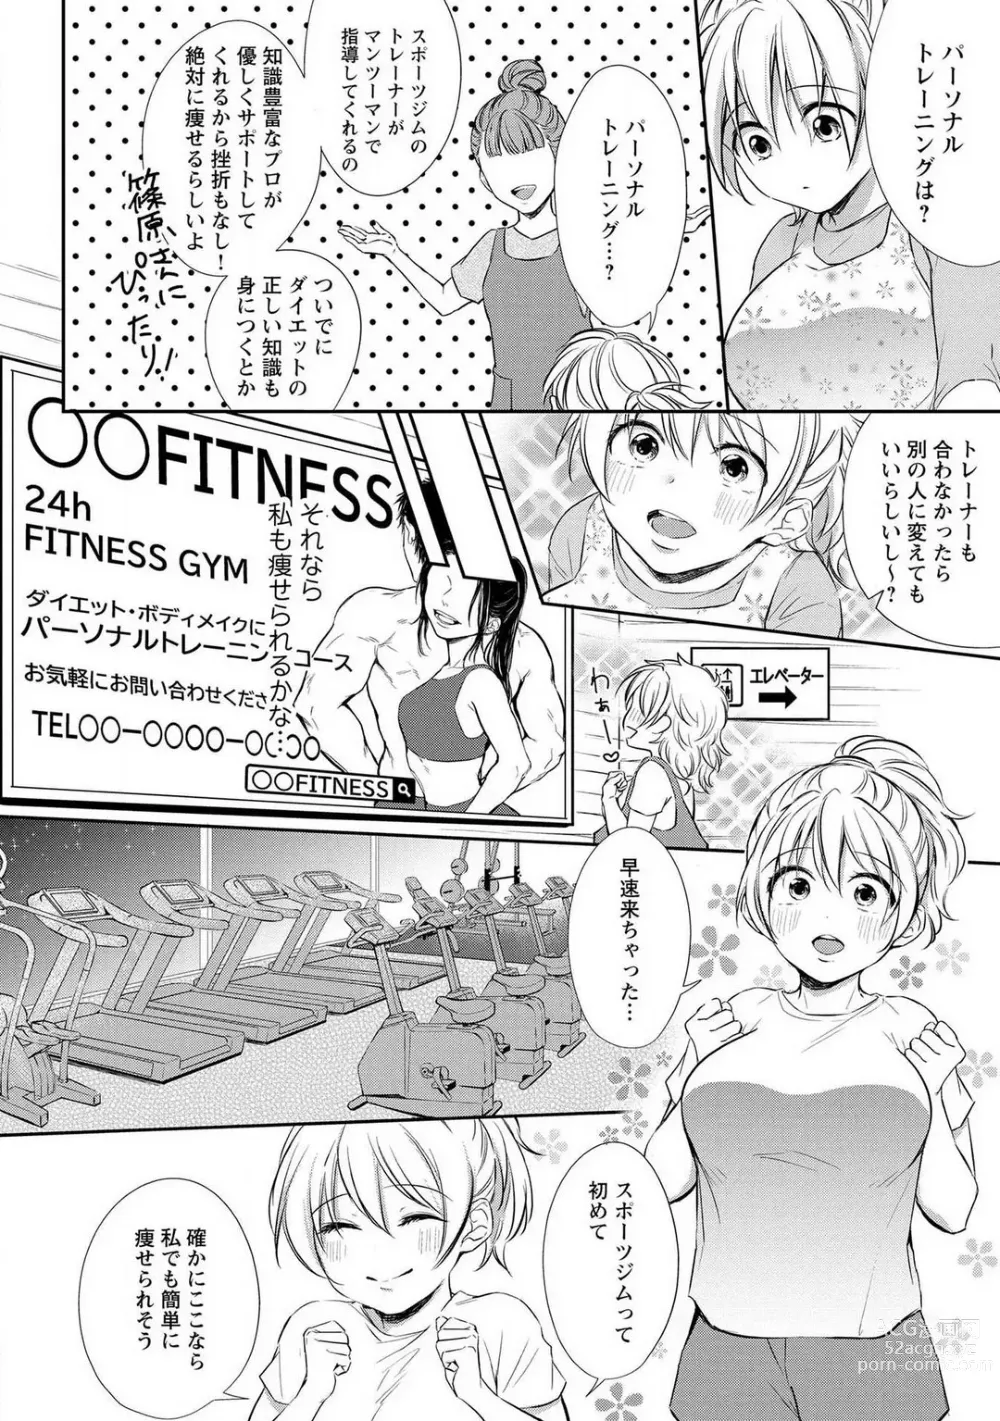 Page 5 of manga Pyuuru